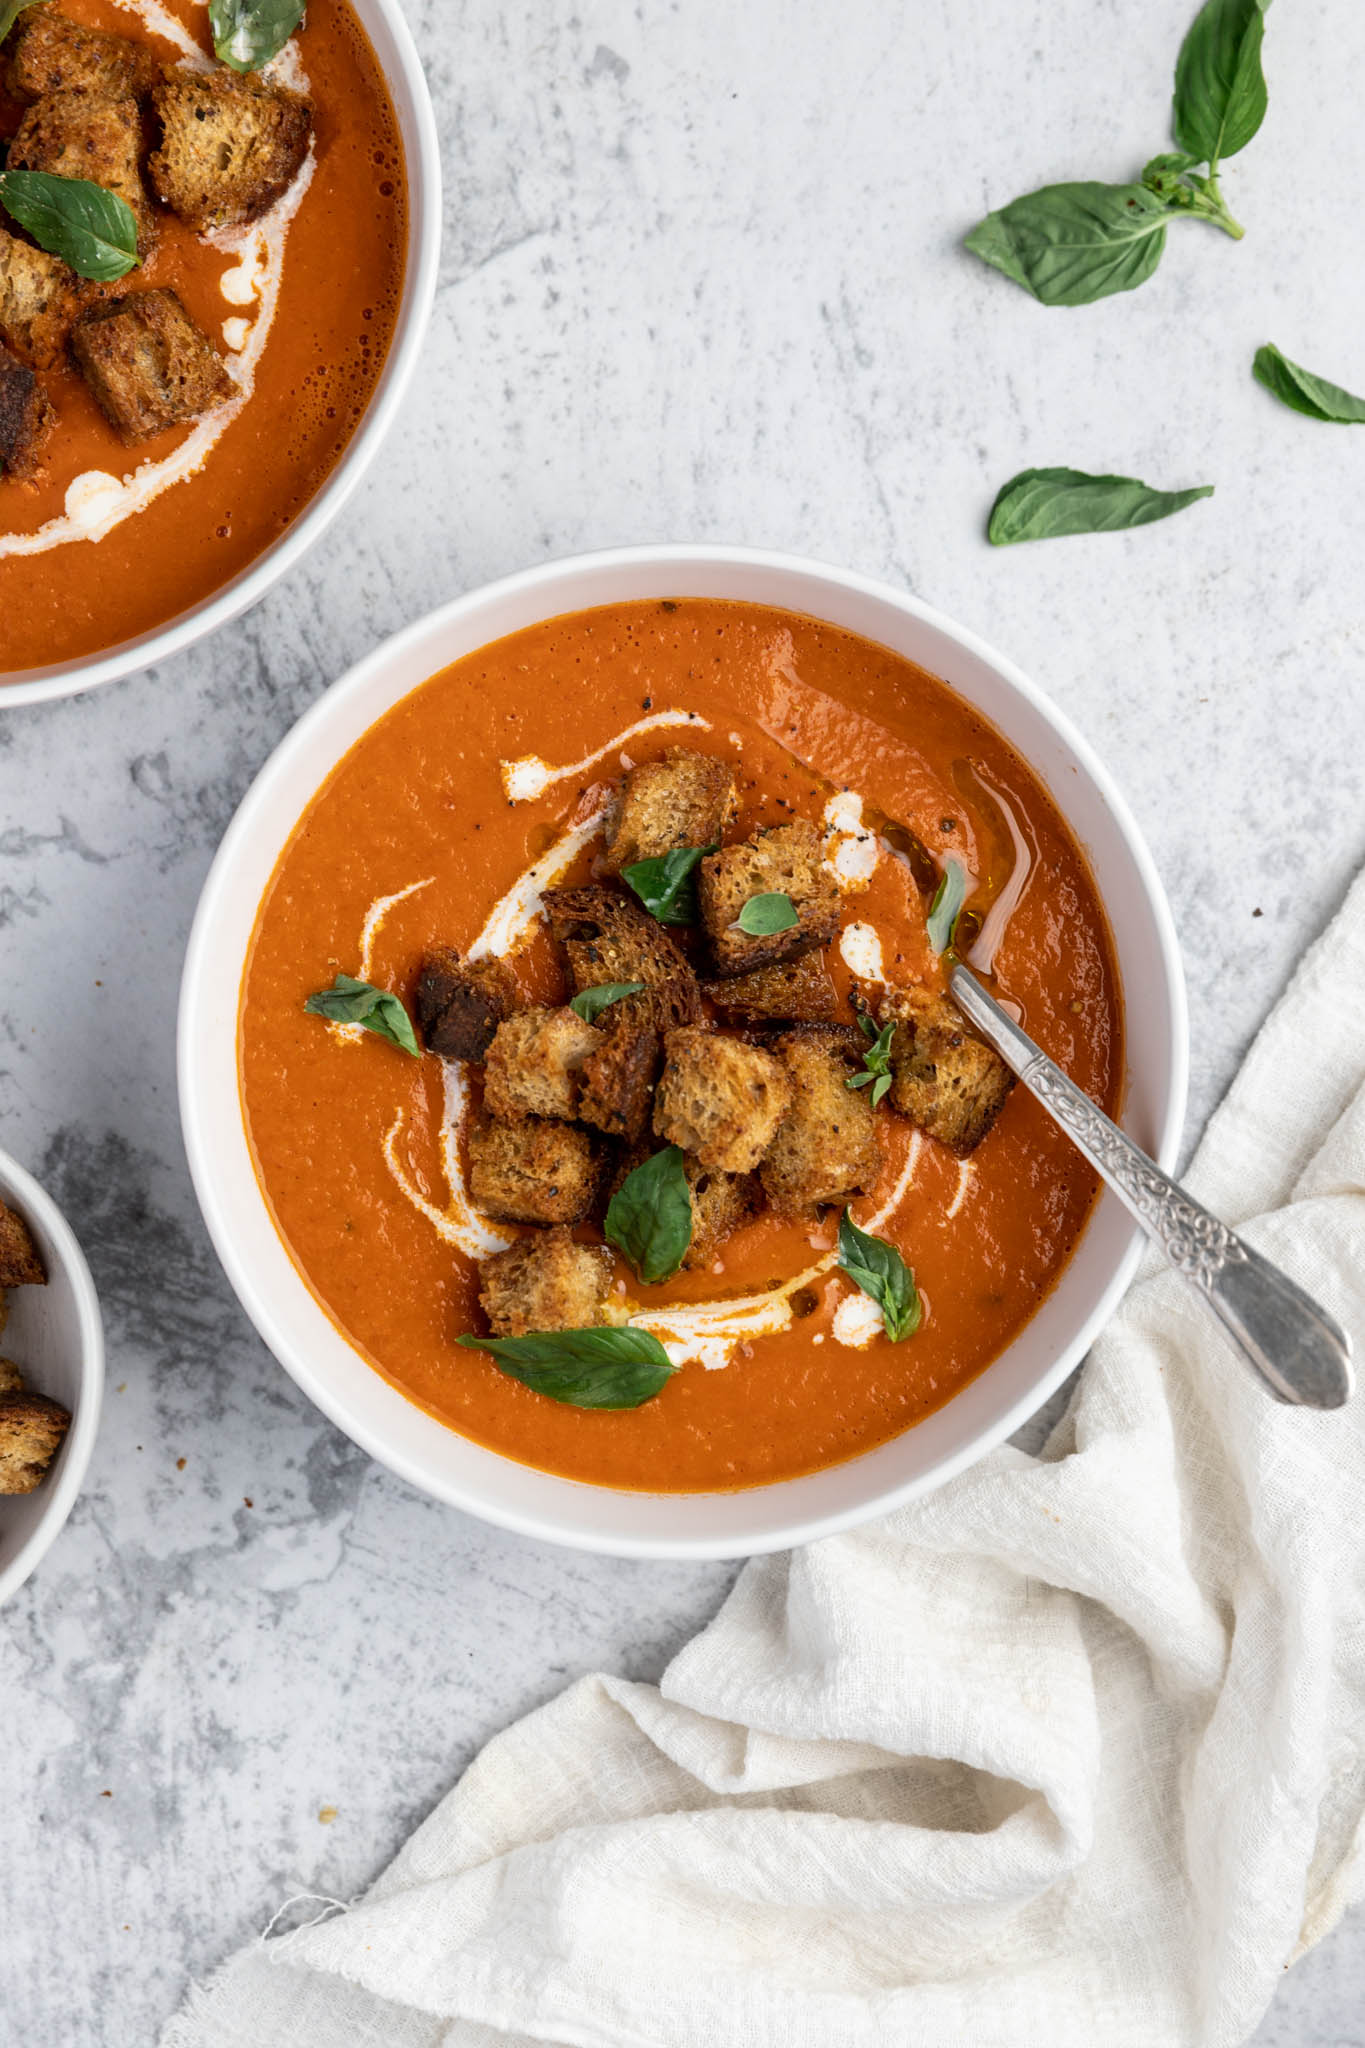 La meilleure recette de soupe tomate et basilic!